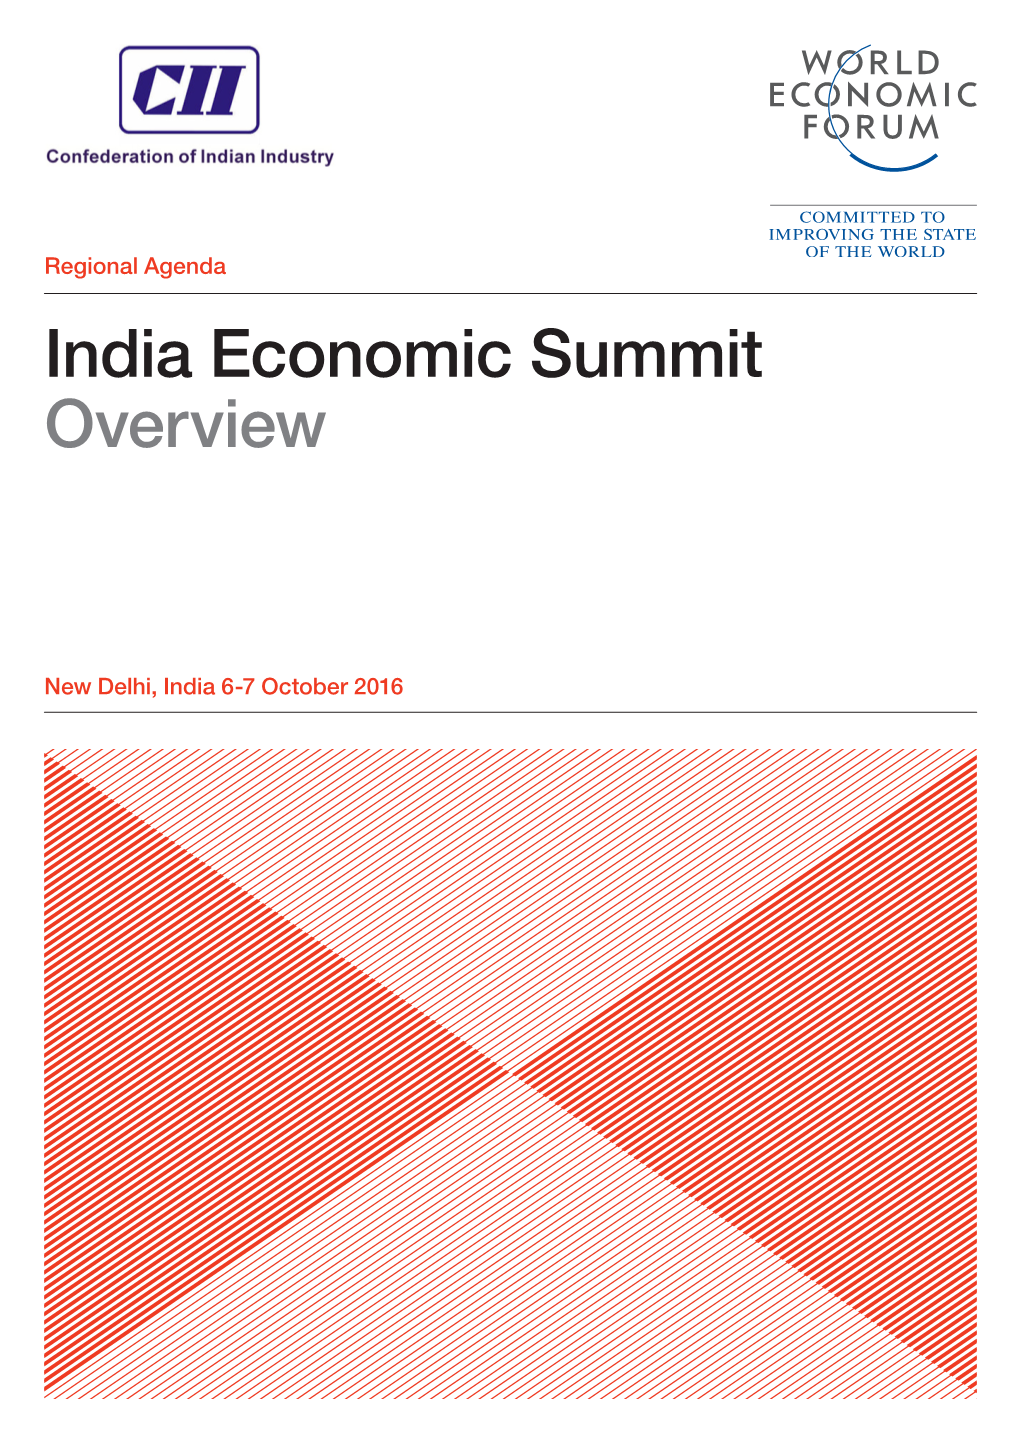 India Economic Summit Overview